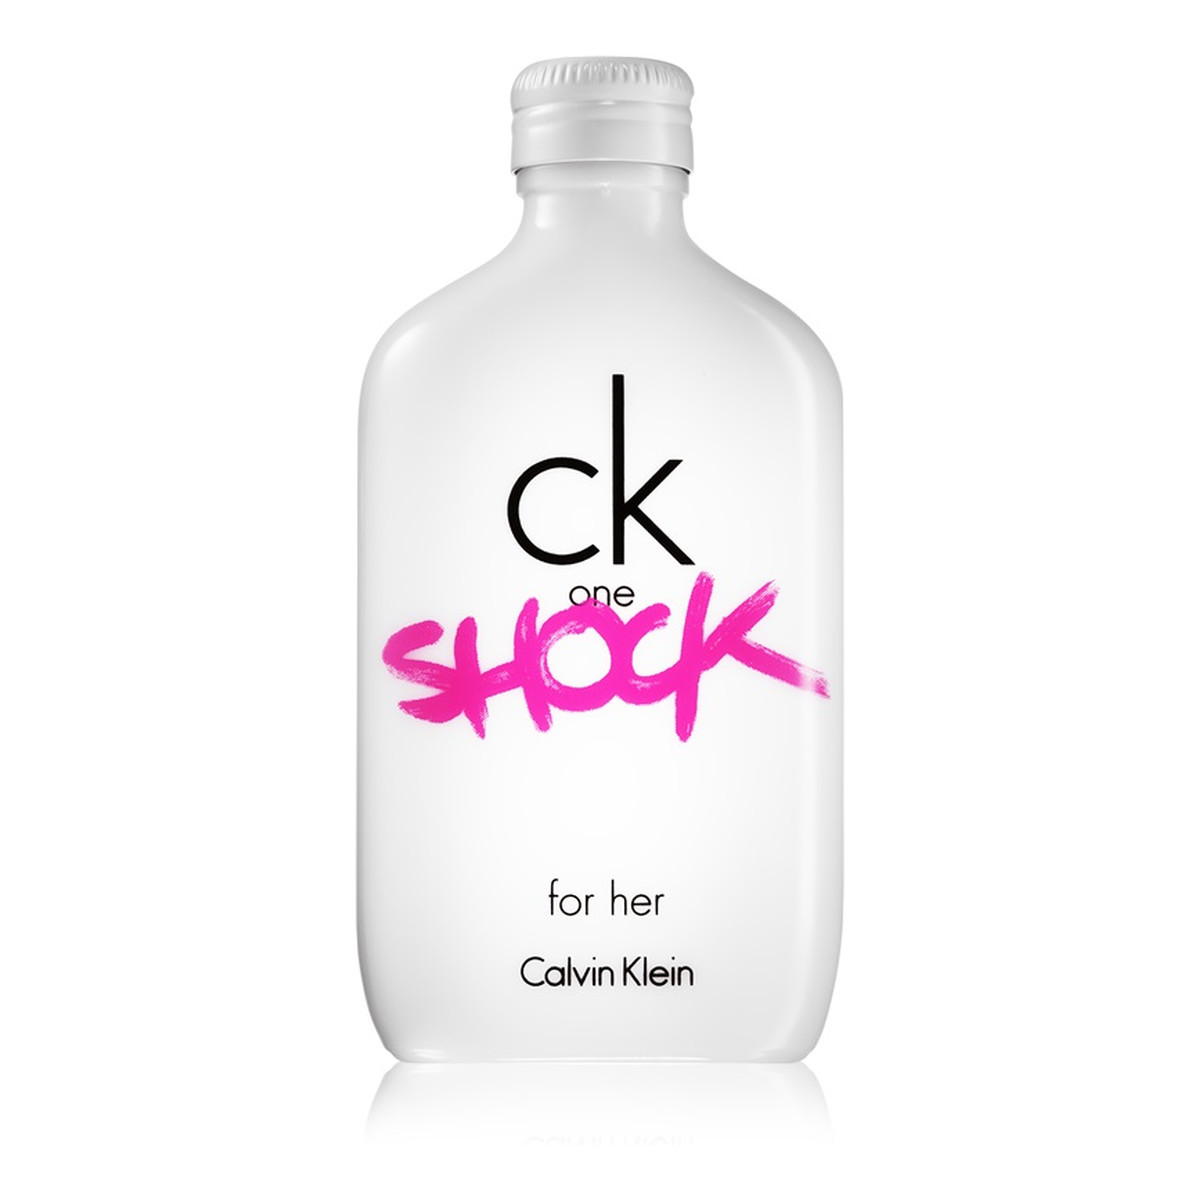 Calvin Klein CK One Shock for Her woda toaletowa dla kobiet 200ml